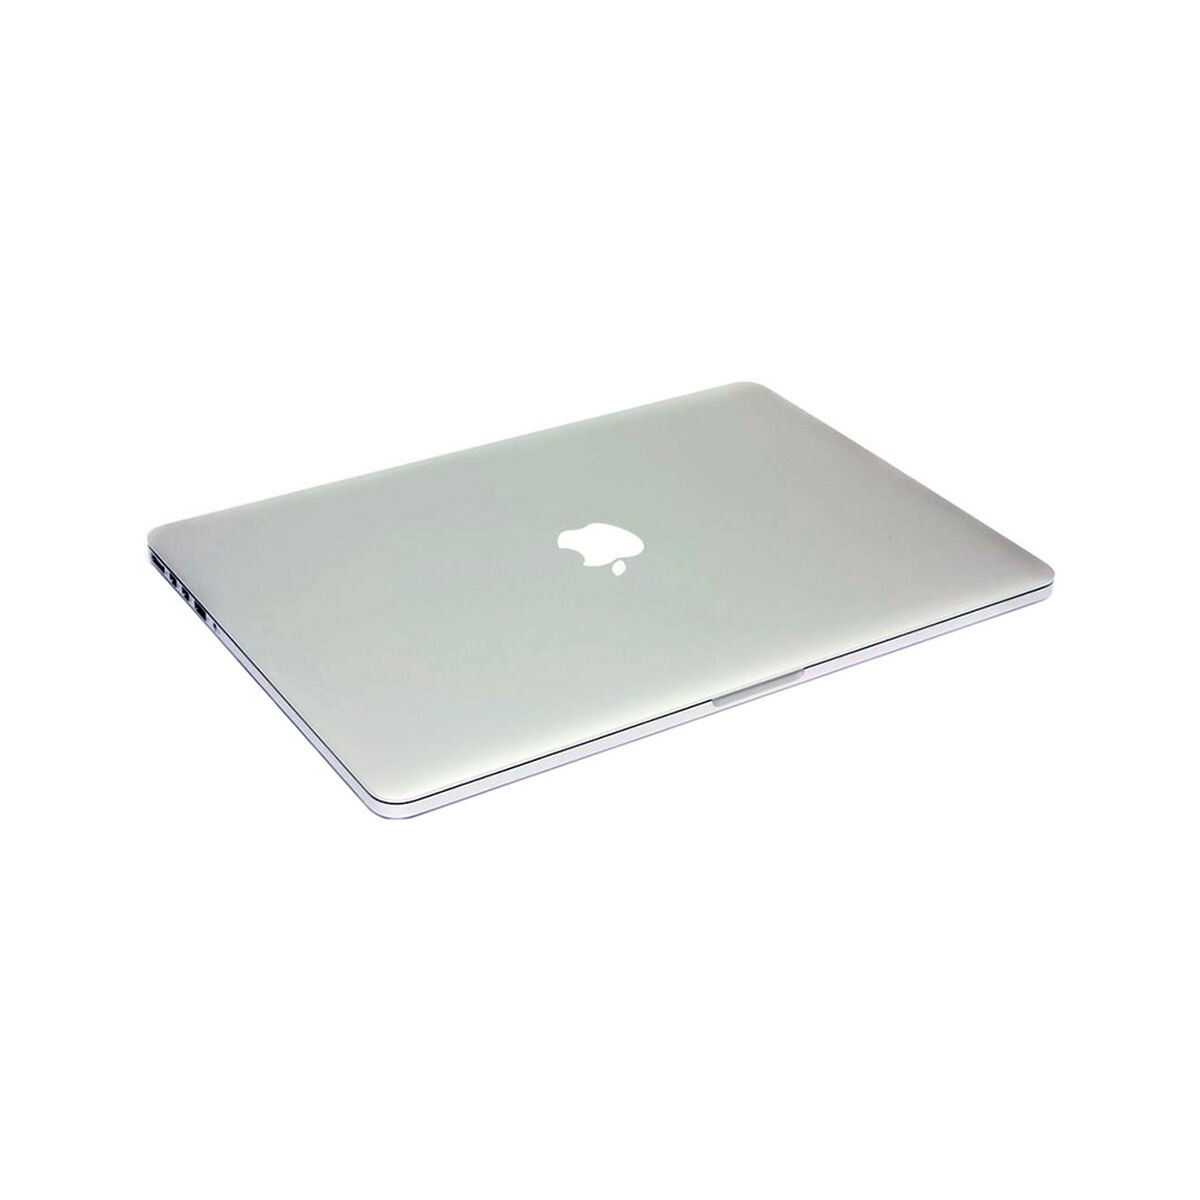 Notebook Reacondicionado Apple Macbook Pro MJLQ2LLA i7 15,4" 16GB 256 SSD